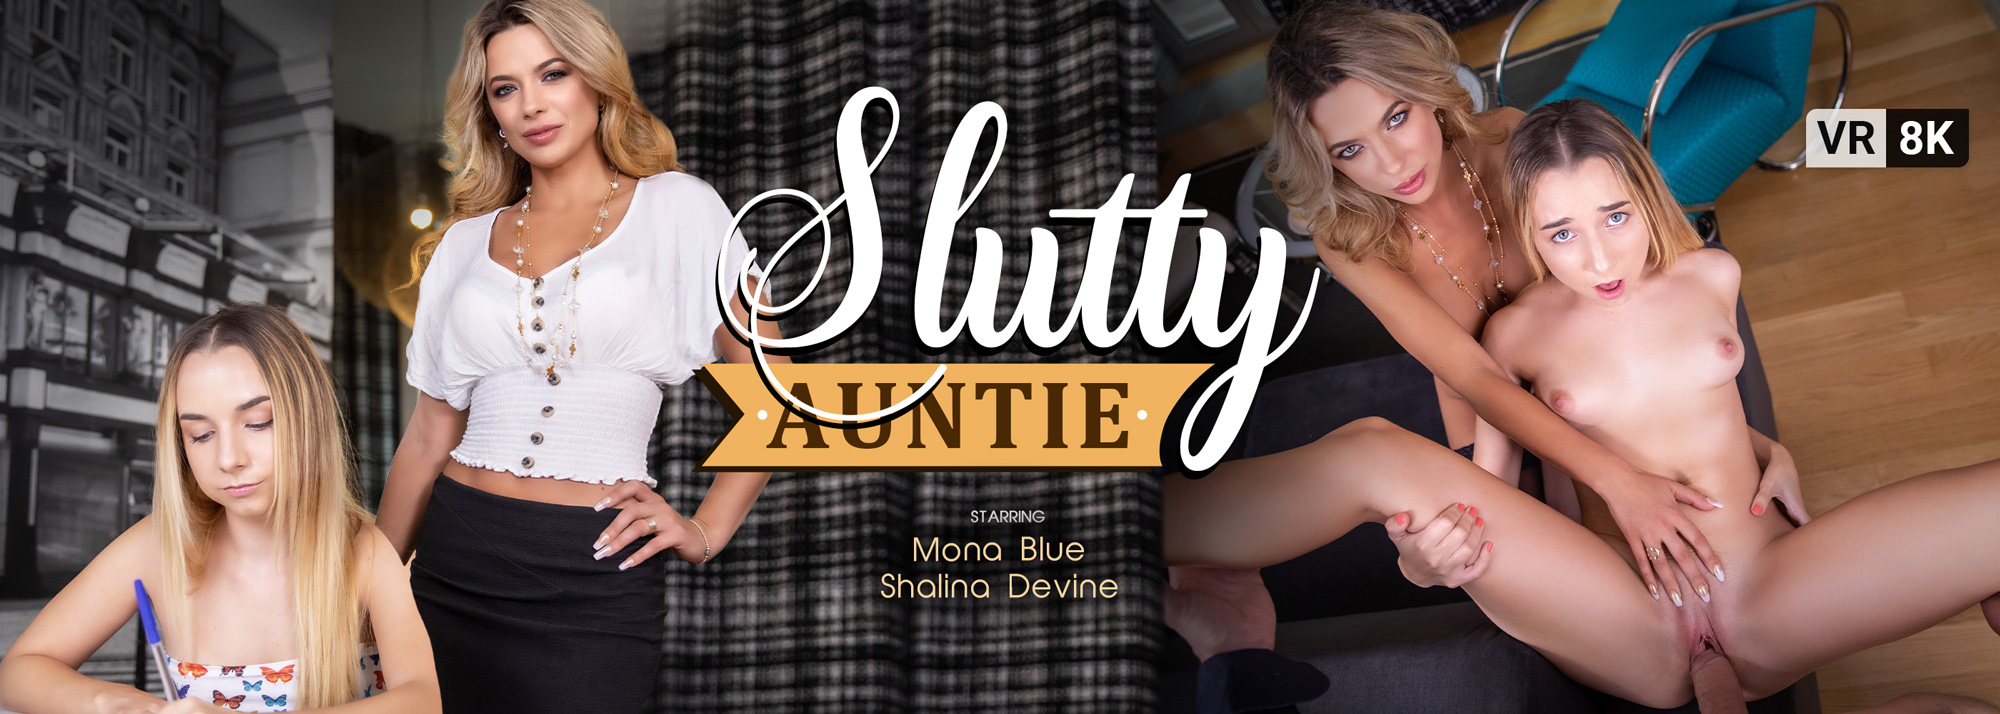 Slutty Auntie - VR Porn Video, Starring: Mona Blue, Shalina Devine